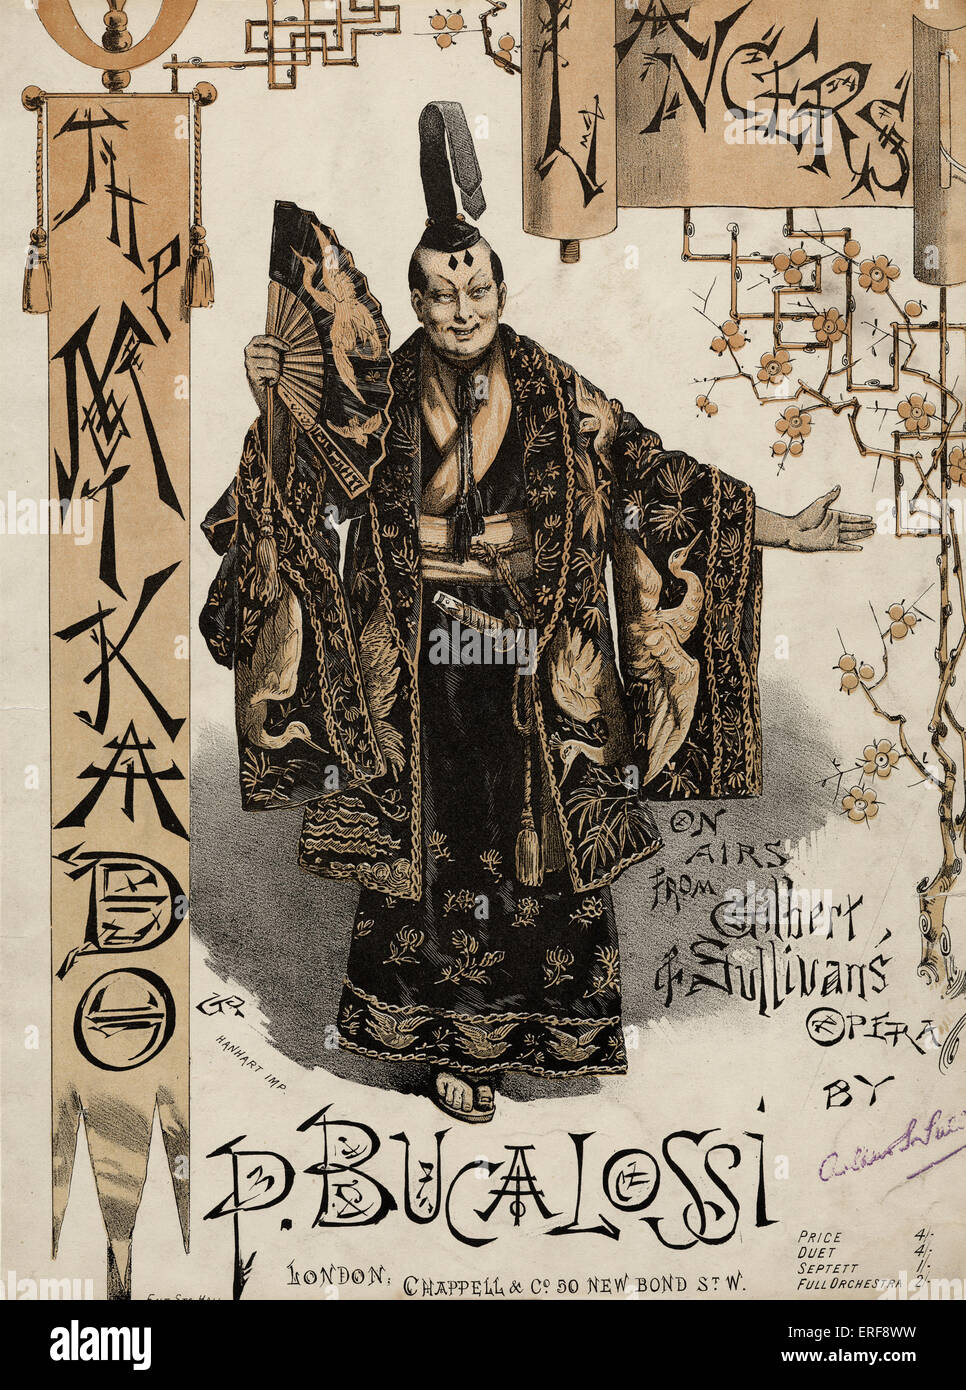 GILBERT & SULLIVAN - MIKADO 1885 Cubierta de puntuación de ritmos de la Mikado, organizado por la P. BUCALOSSI. Hombre japonés manteniendo el ventilador Foto de stock